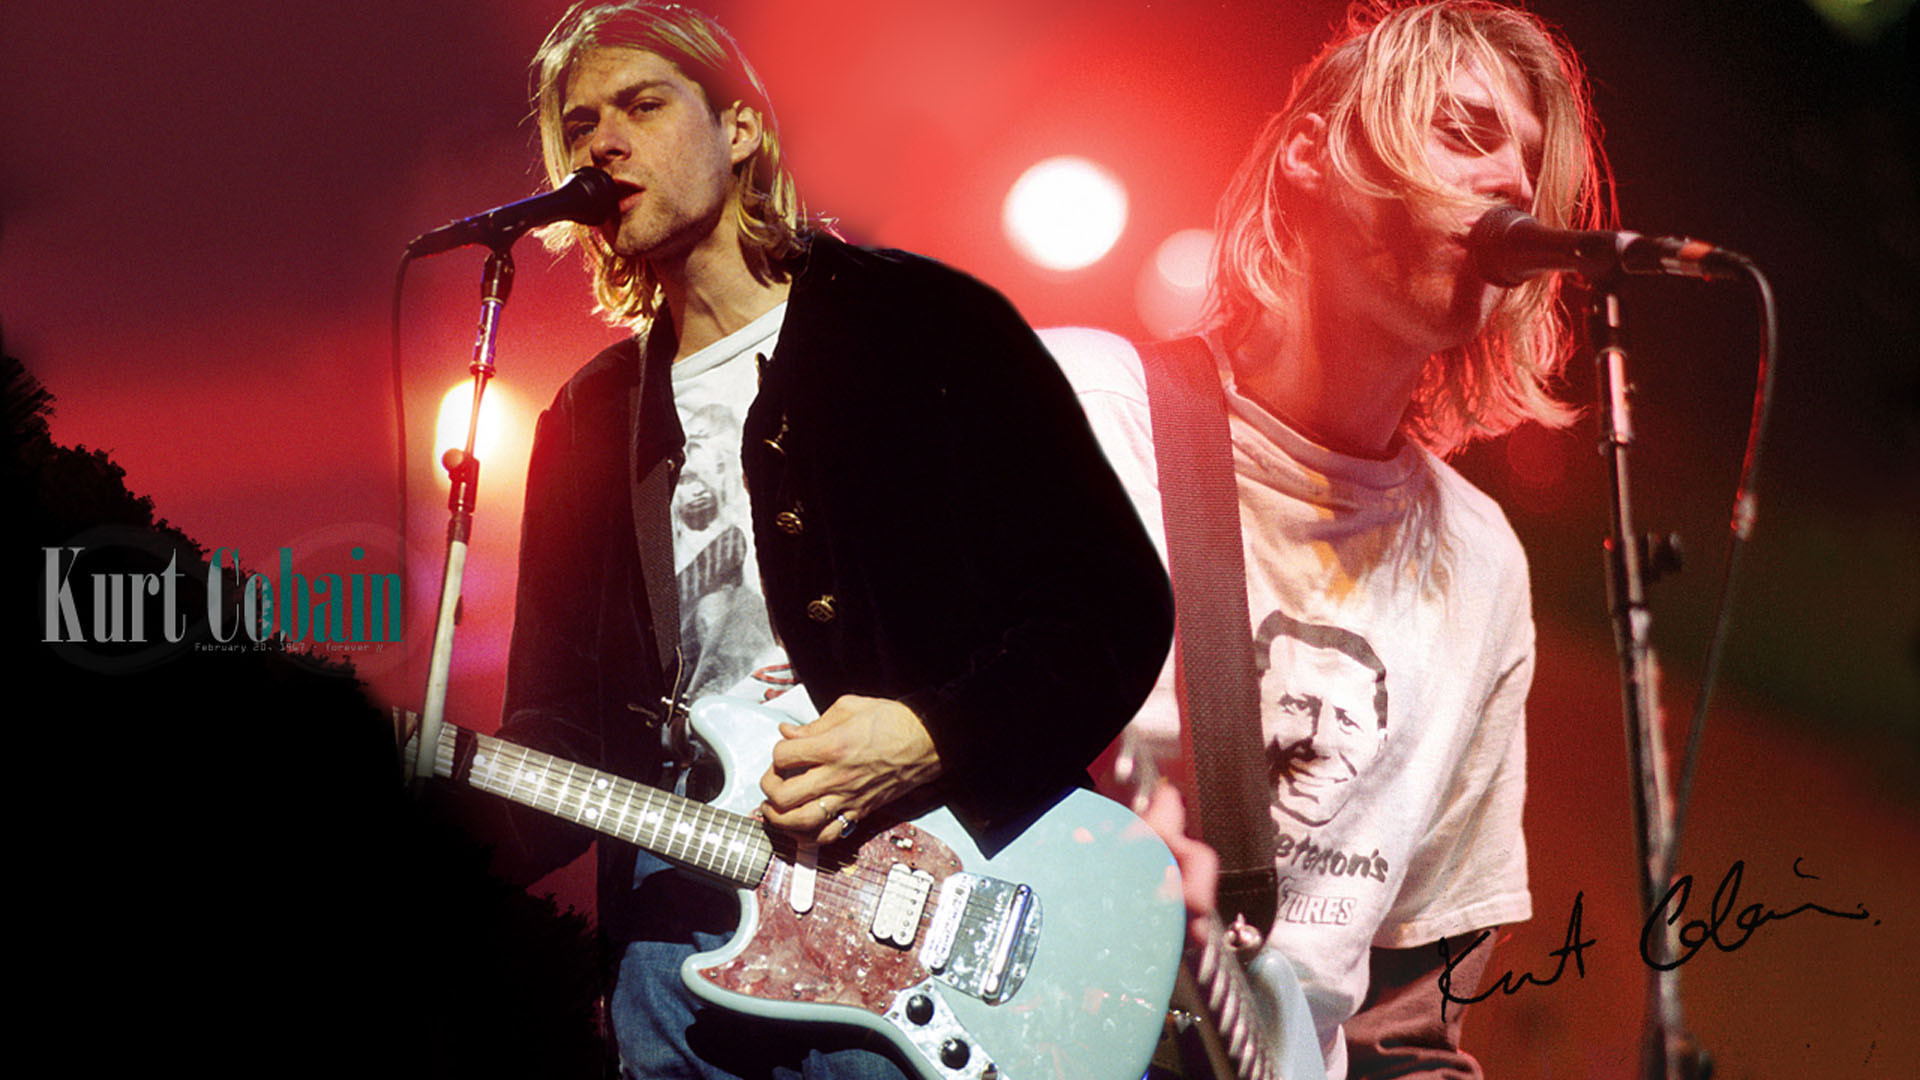 Kurt Cobain Wallpaper Desktop